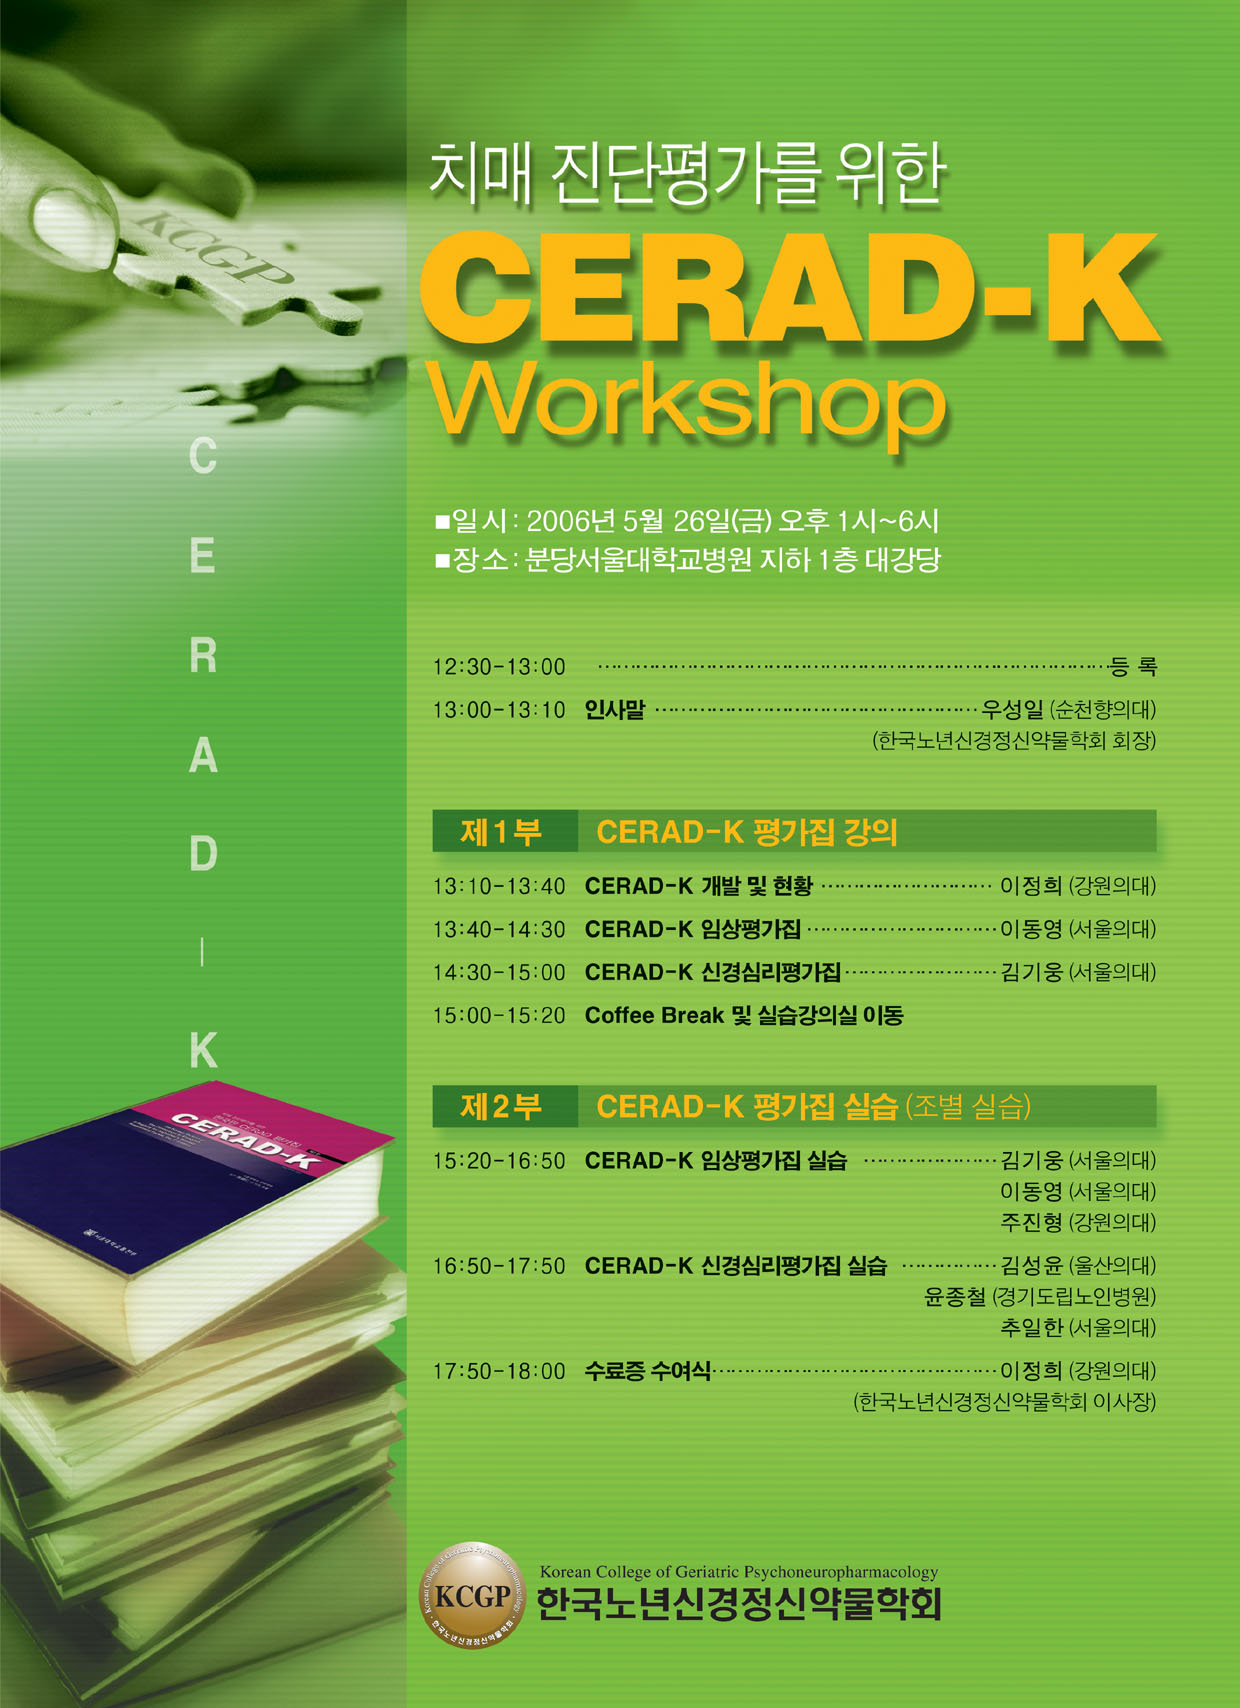 치매 진단평가를 위한 CERAD-K Workshop